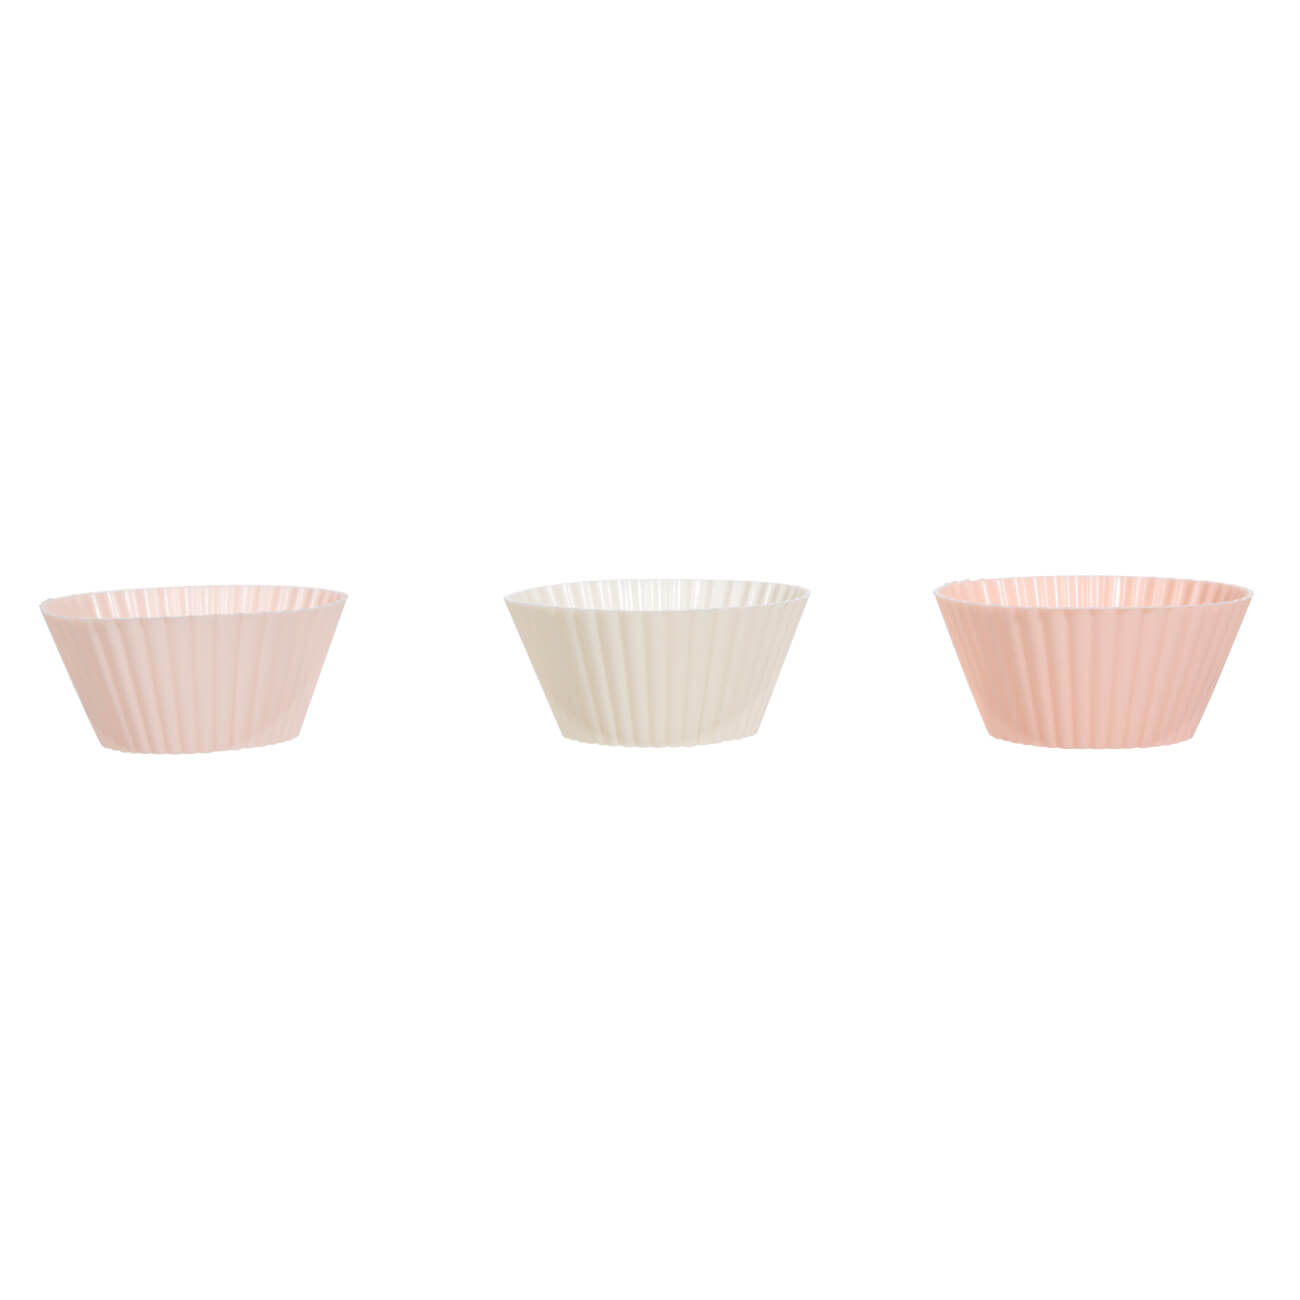 Форма для выпечки кексов, 7х3 см, 6 шт, силикон, бежевая/розовая/белая, Bakery изображение № 1